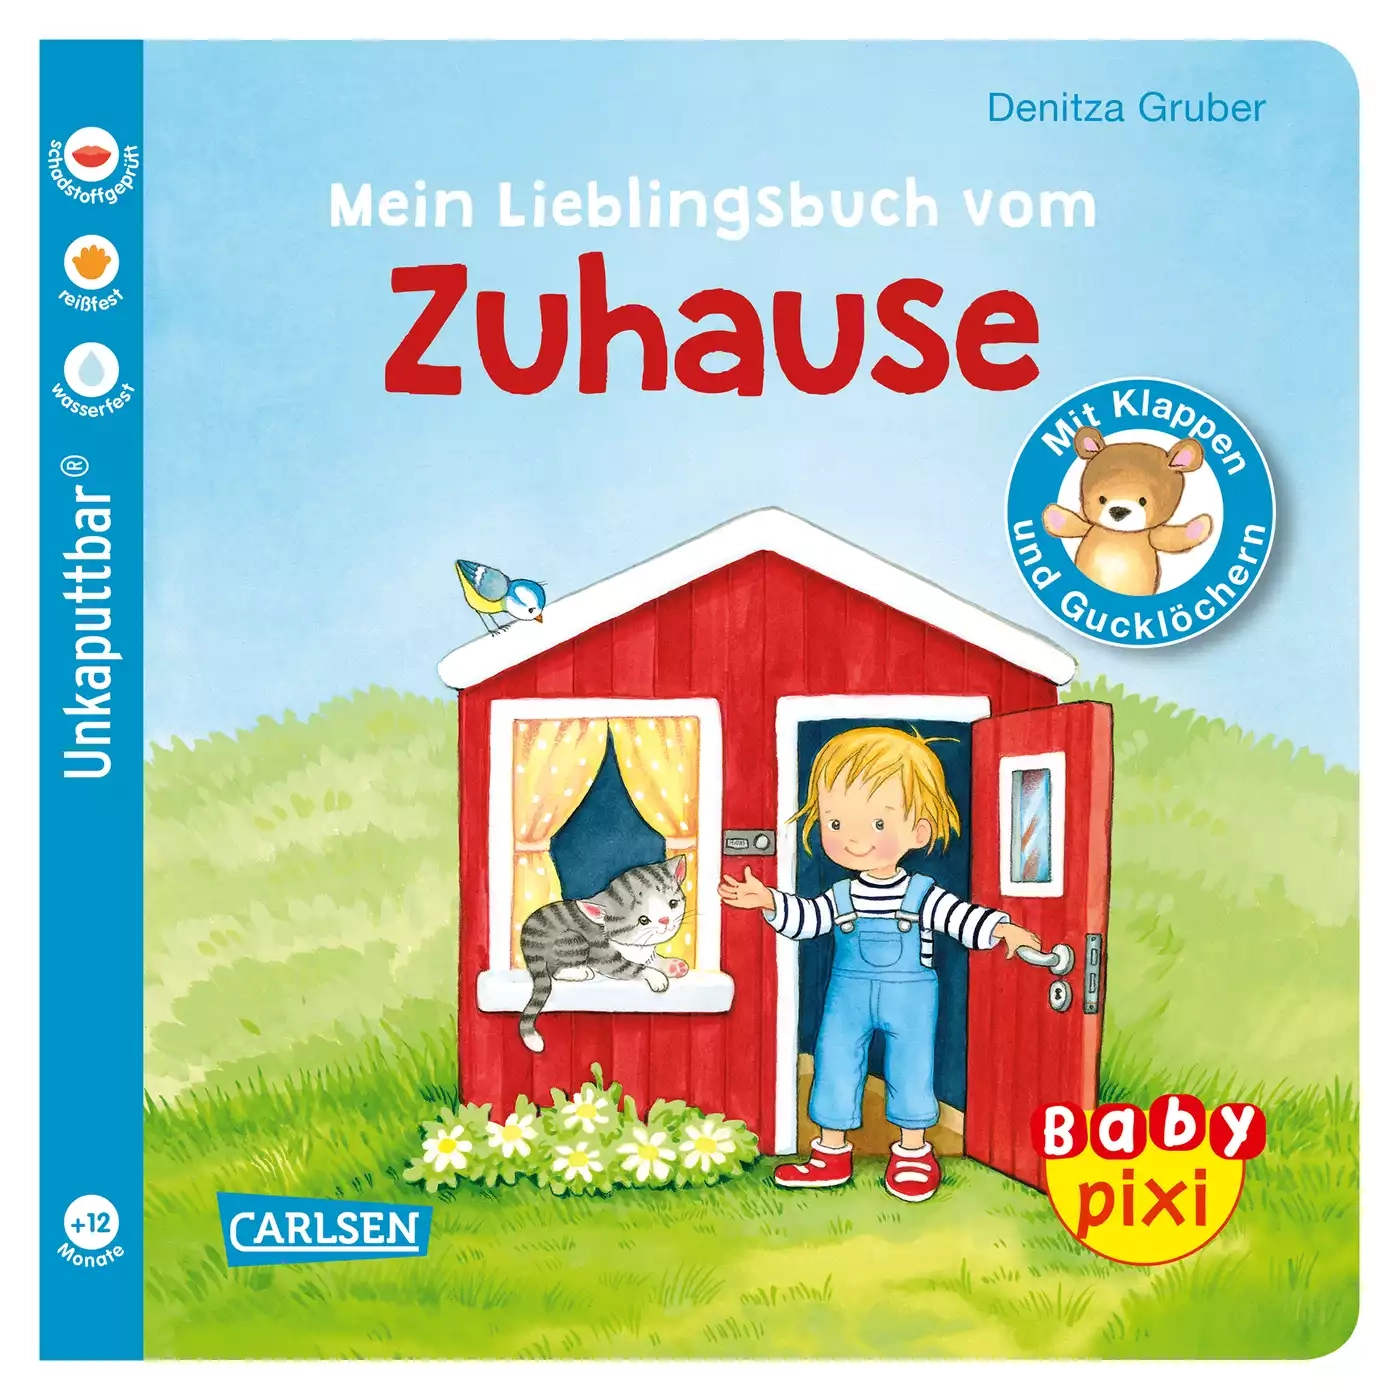 Baby Pixi - Mein Lieblingsbuch vom Zuhause CARLSEN 2000579081019 3